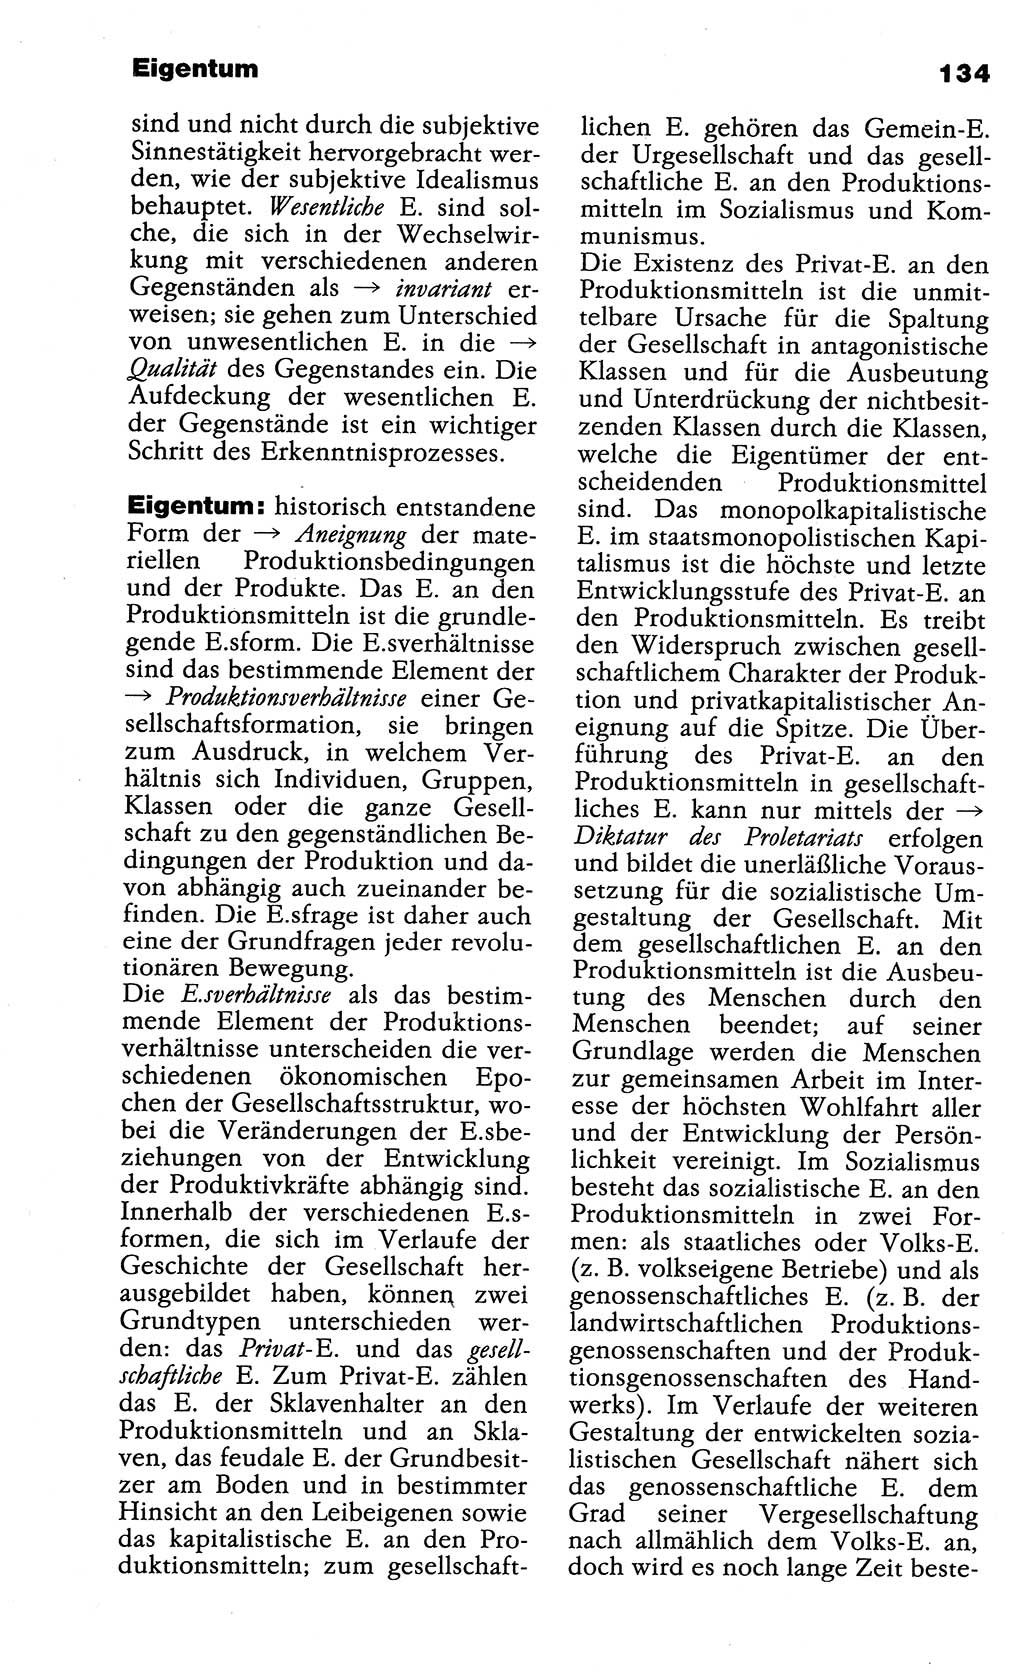 Wörterbuch der marxistisch-leninistischen Philosophie [Deutsche Demokratische Republik (DDR)] 1985, Seite 134 (Wb. ML Phil. DDR 1985, S. 134)